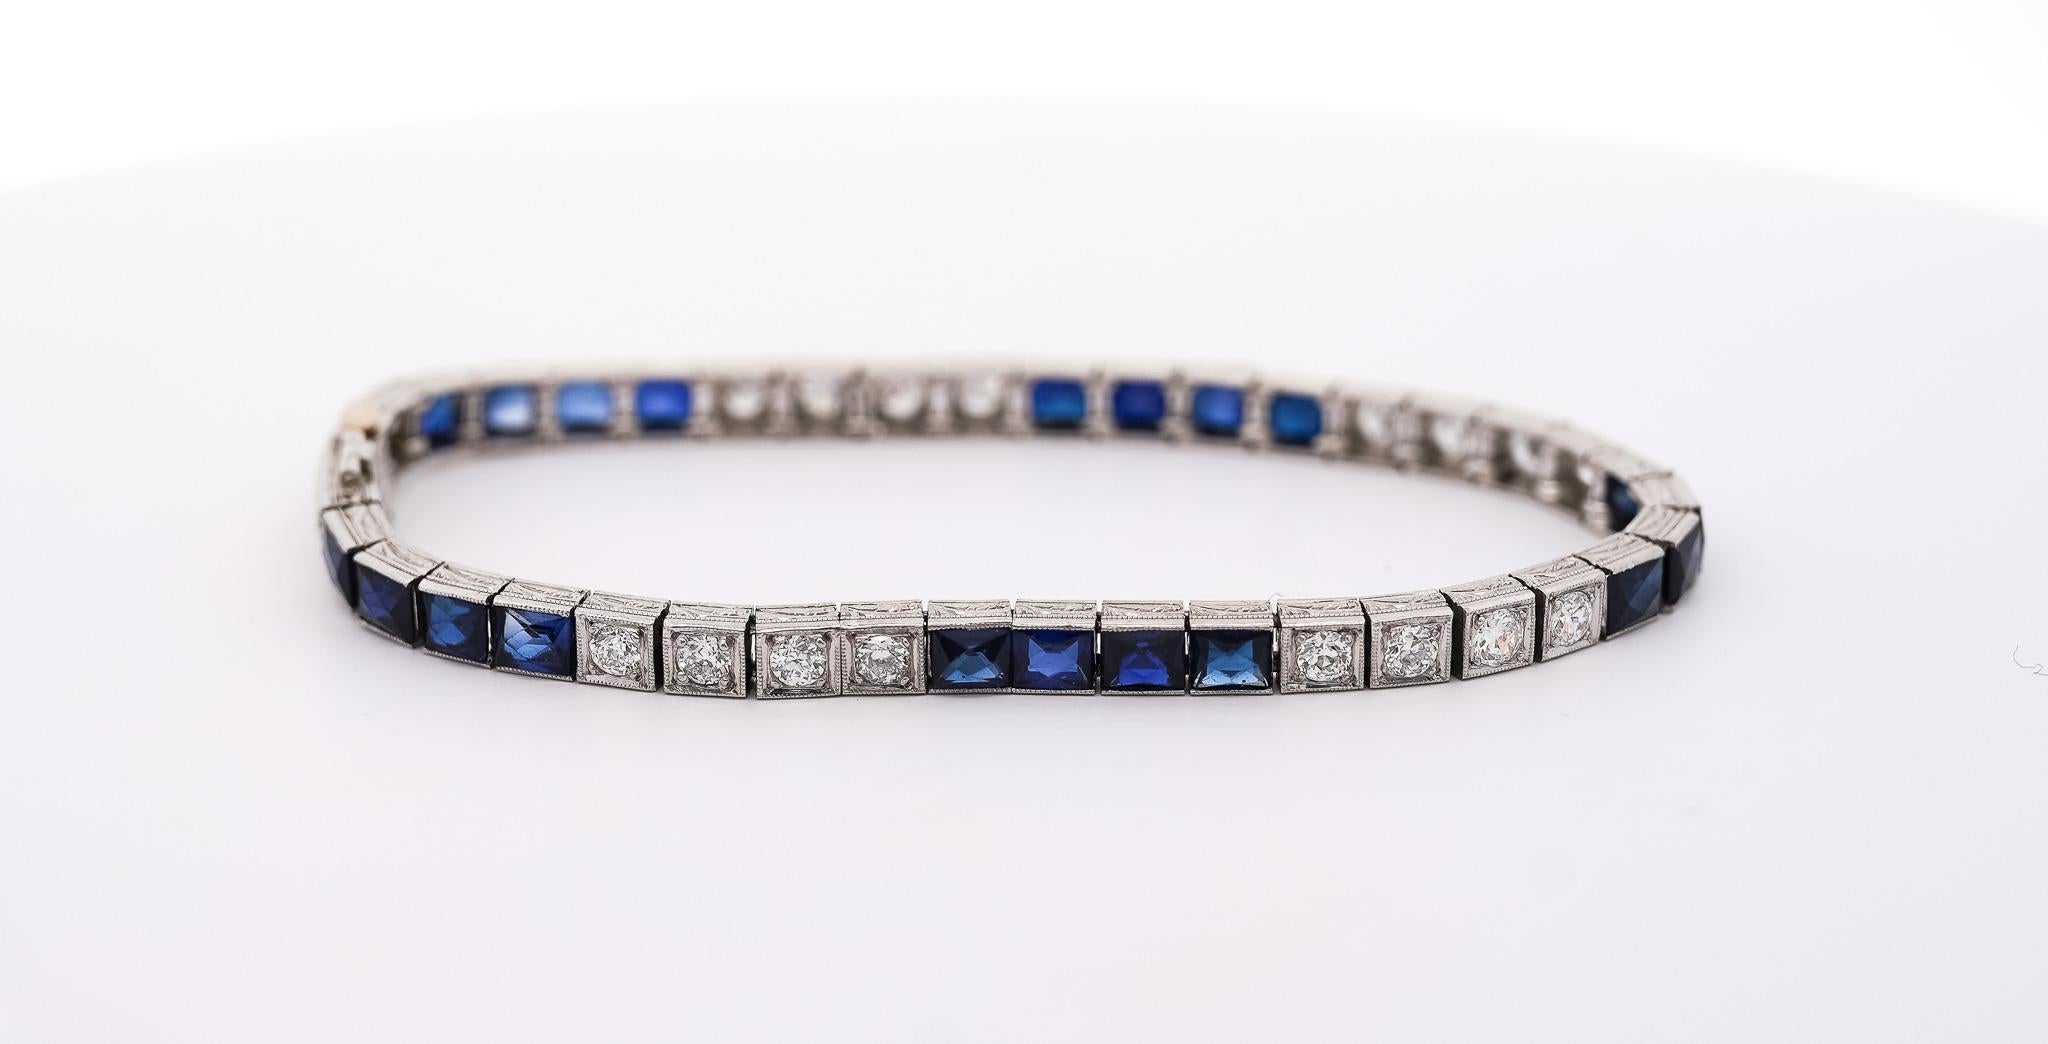 Bracelet vintage en platine filigrané avec diamants et saphirs bleus synthétiques. Vers 1935. 

Rehaussez votre collection avec cet exquis bracelet à maillons carrés en platine filigrané Art of Vintage. Fabriqué avec des détails méticuleux, ce